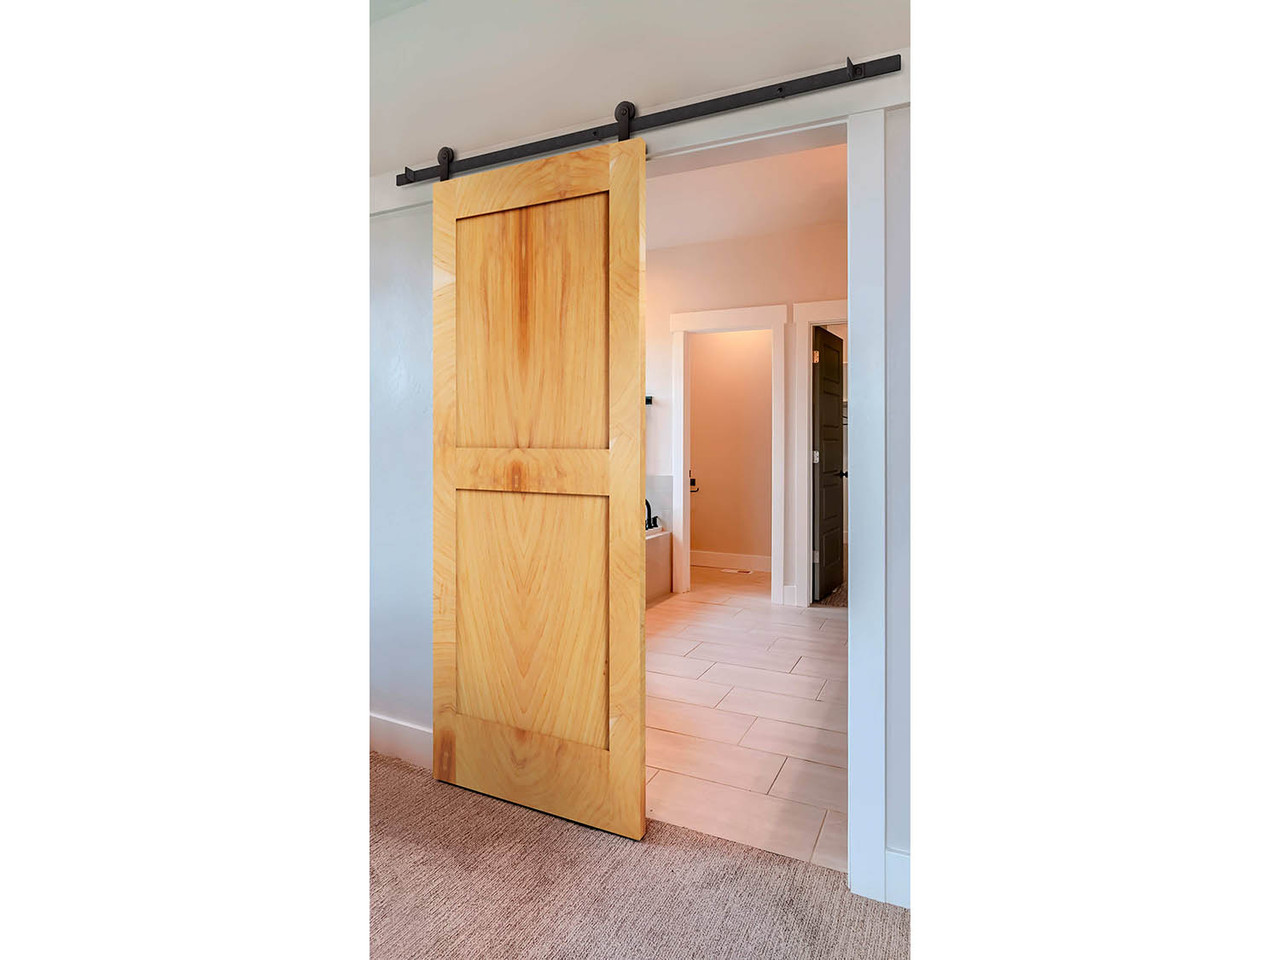 Solid Walnut Door Stop Door Stopper Personalized Wooden 